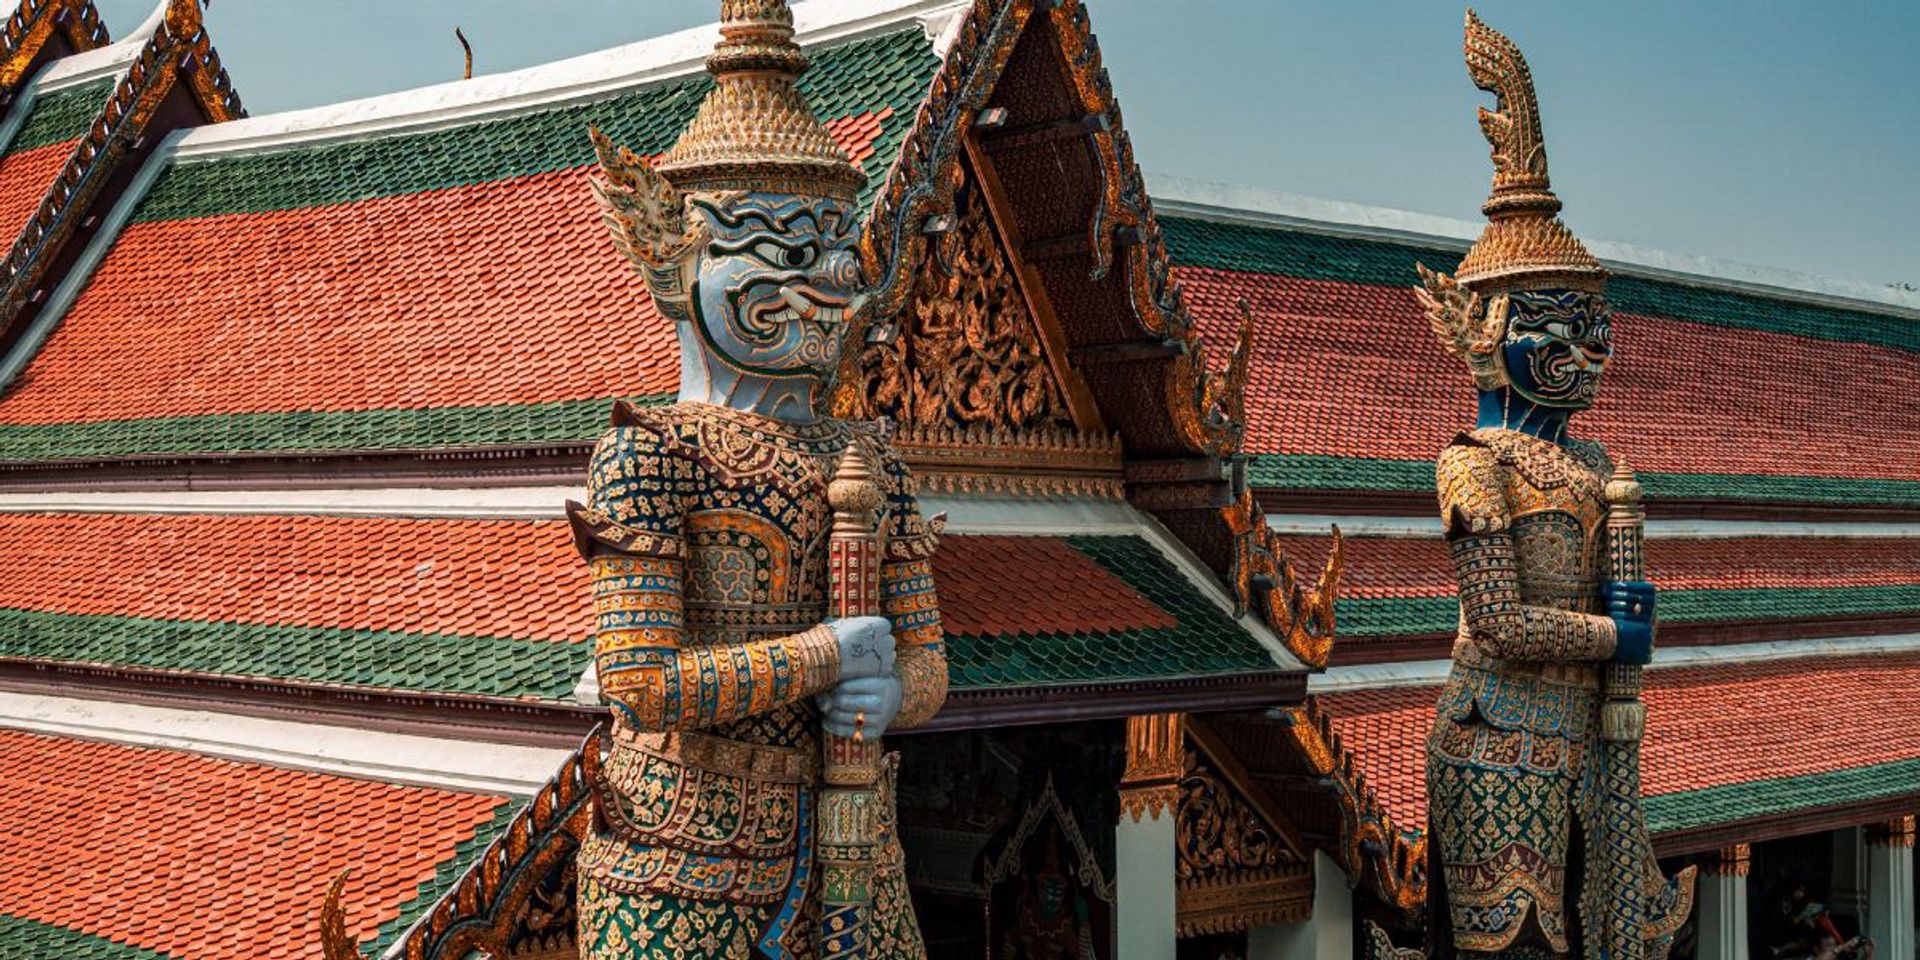 Bangkok museum